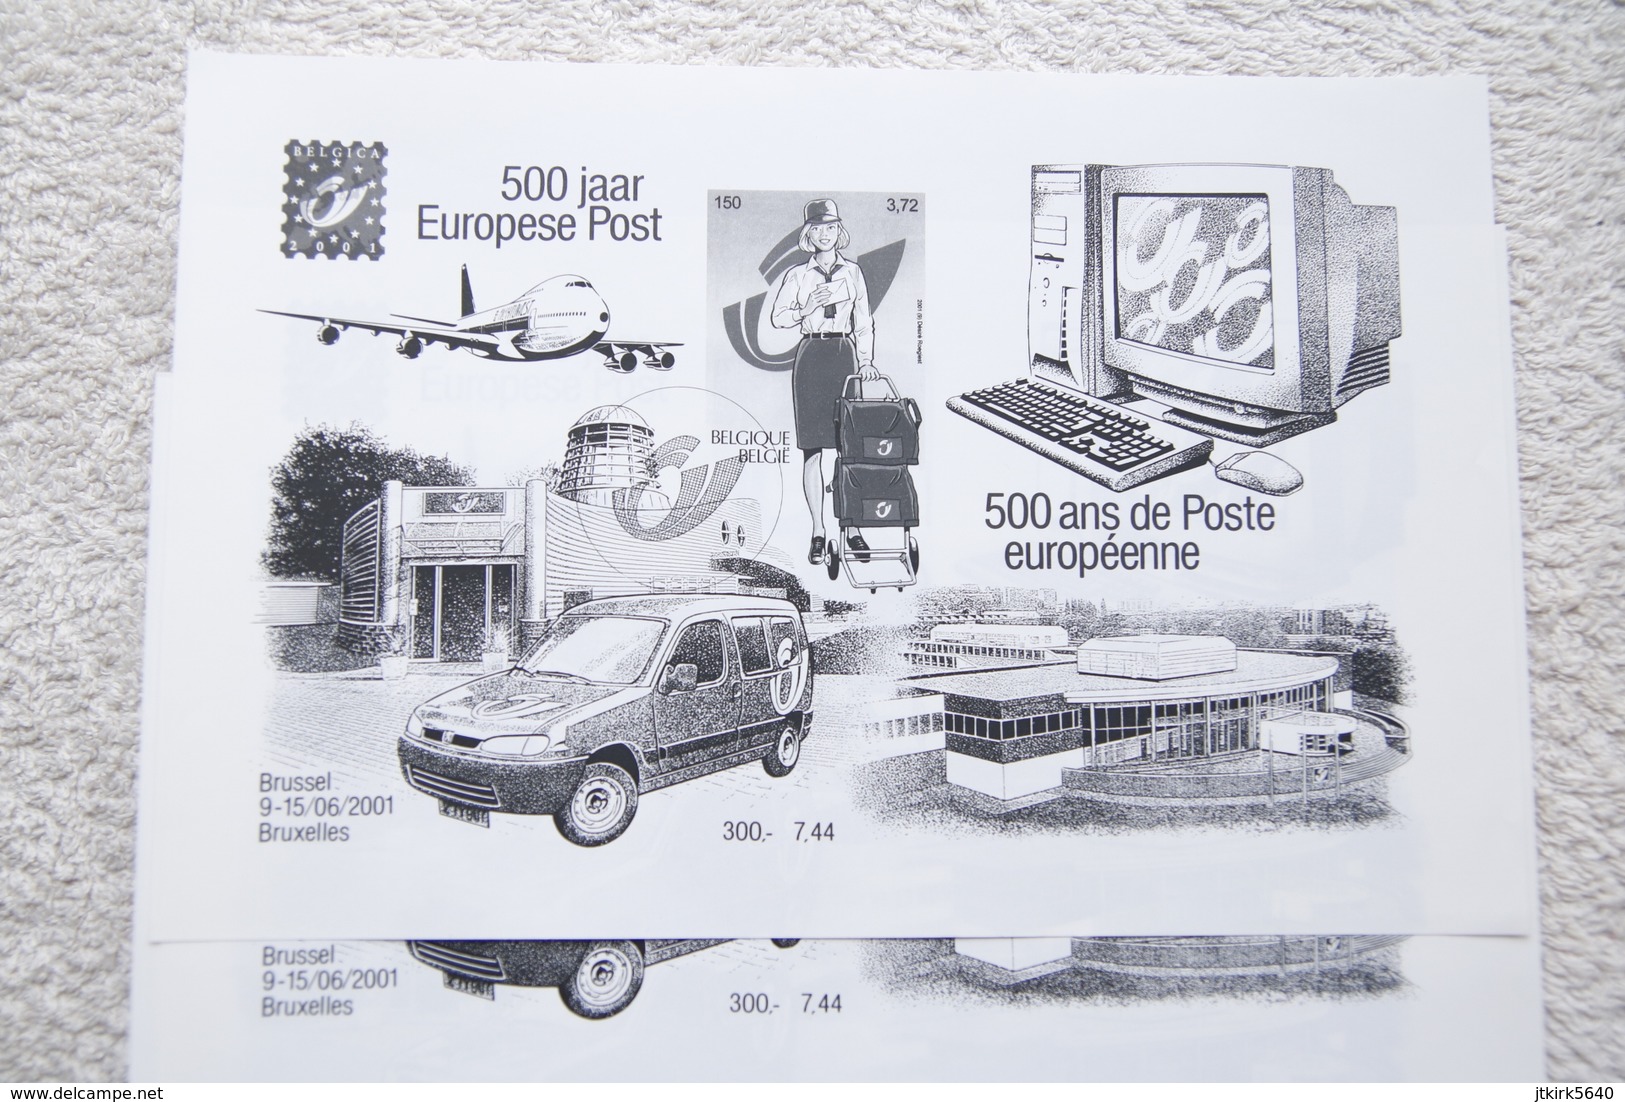 5 Feuillets Noir Et Blanc "500 Ans De Poste Européenne" (COB/OBP 3001) Belgica 2001. - B&W Sheetlets, Courtesu Of The Post  [ZN & GC]